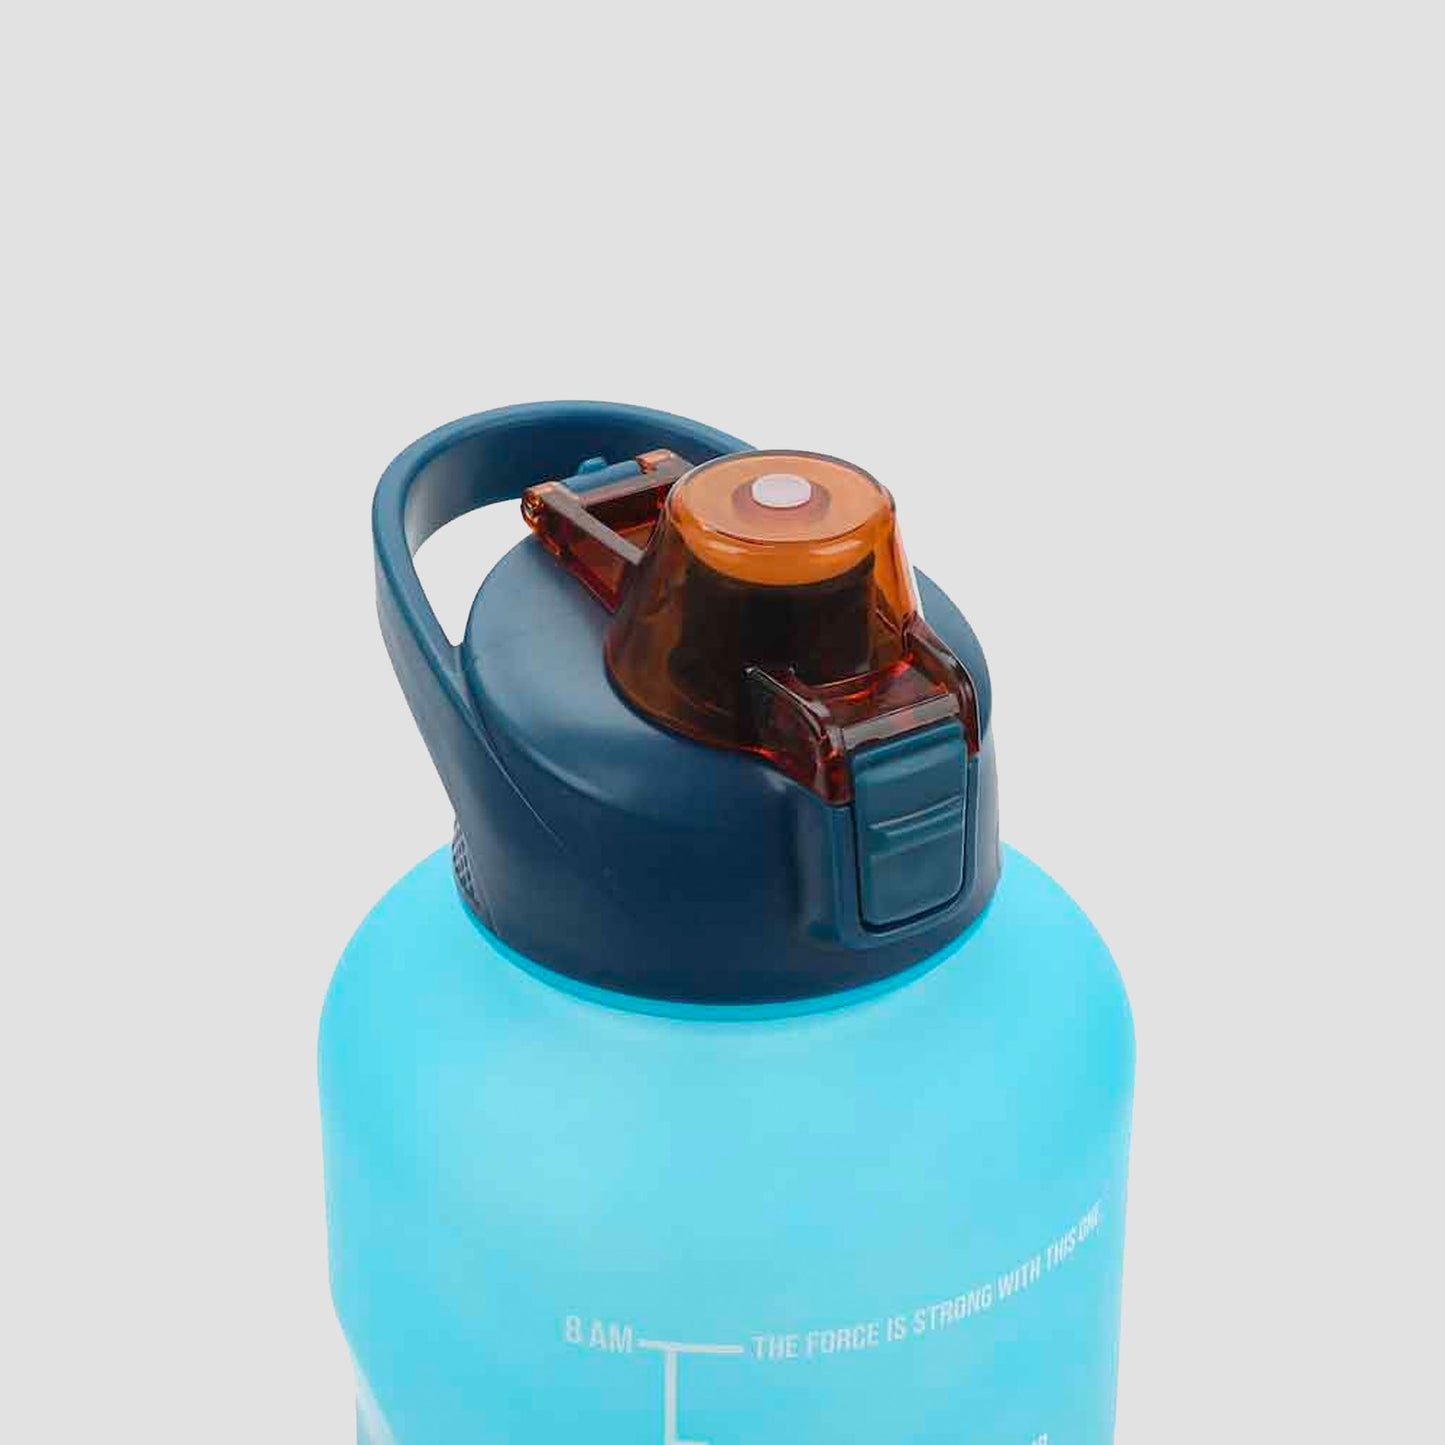 Star Wars Jedi Motivational Water Bottle